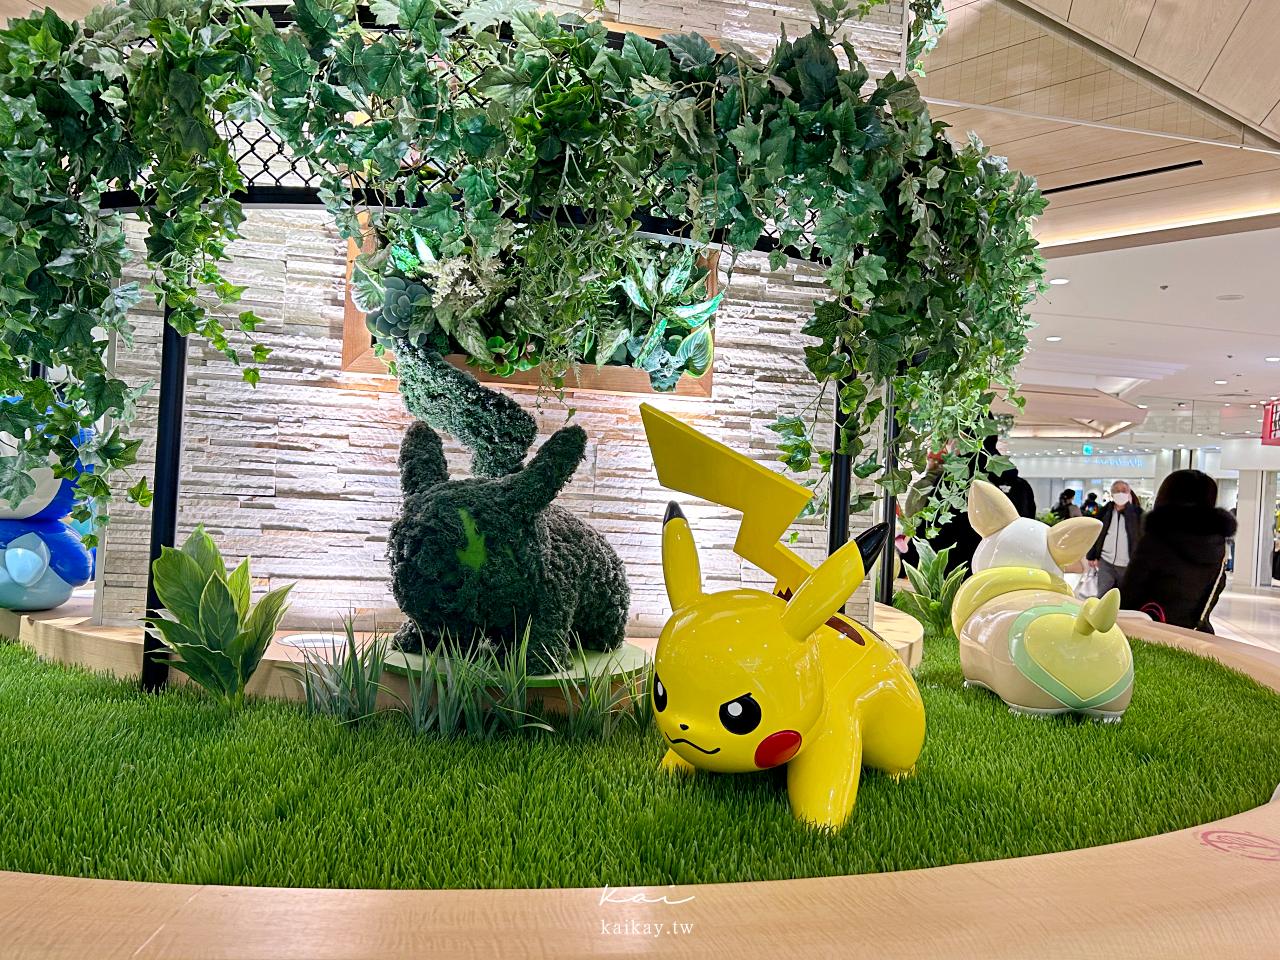 ☆【寶可夢】東京必逛４間特色寶可夢中心精選。加碼橫濱海洋主題Pokemon center